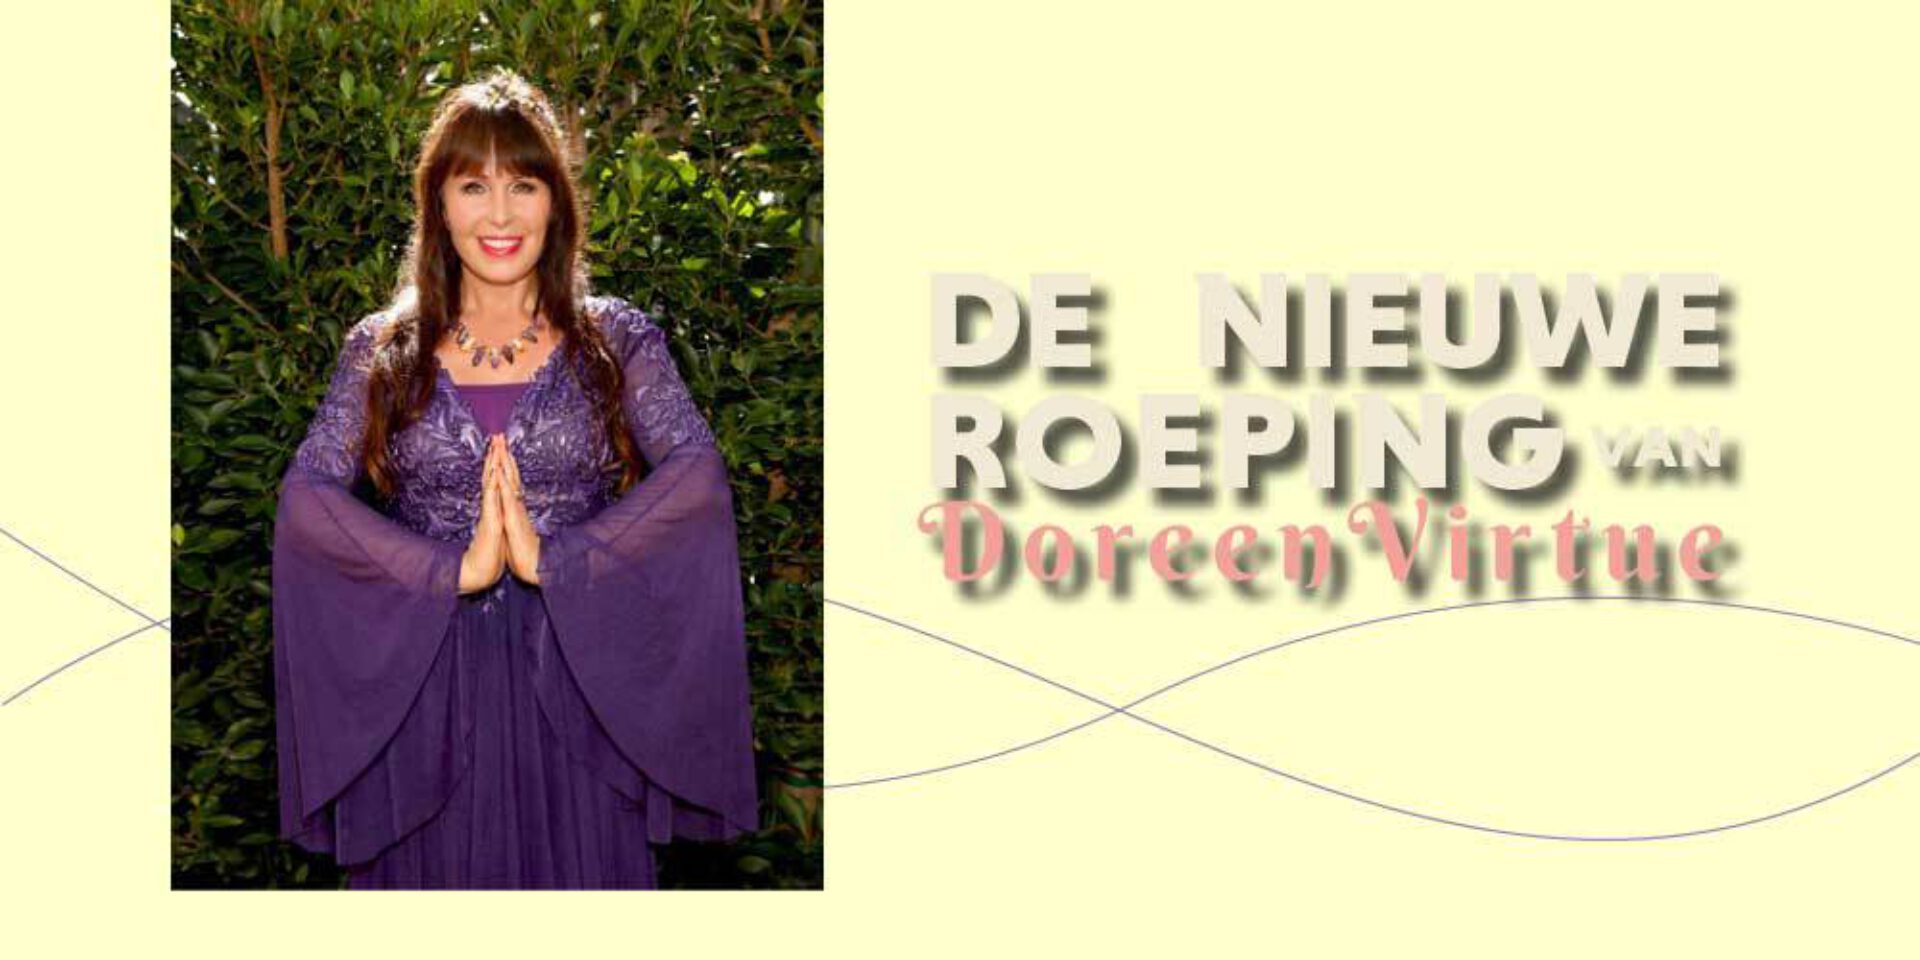 De nieuwe roeping van Doreen Virtue